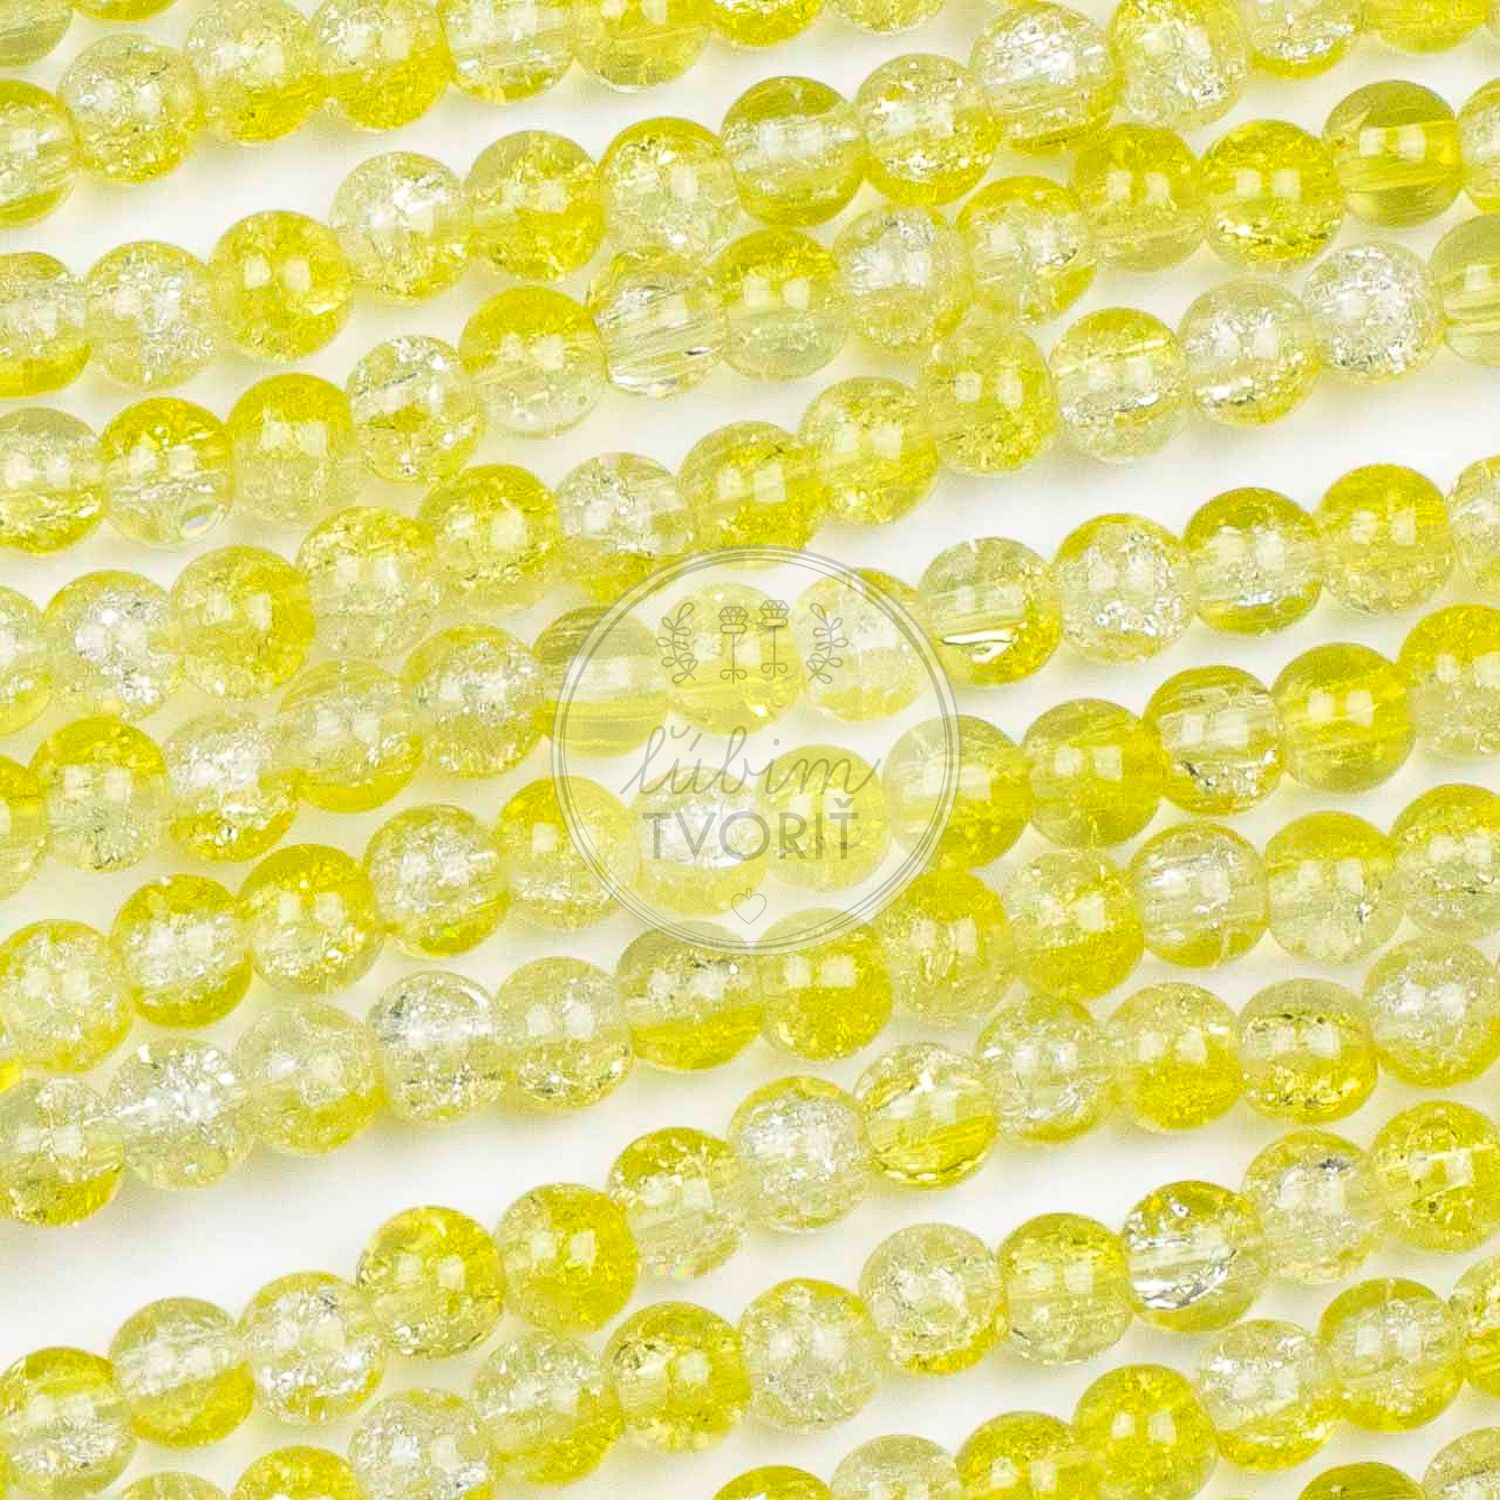 Sklenené korálky - praskačky, 6 mm - 10 ks